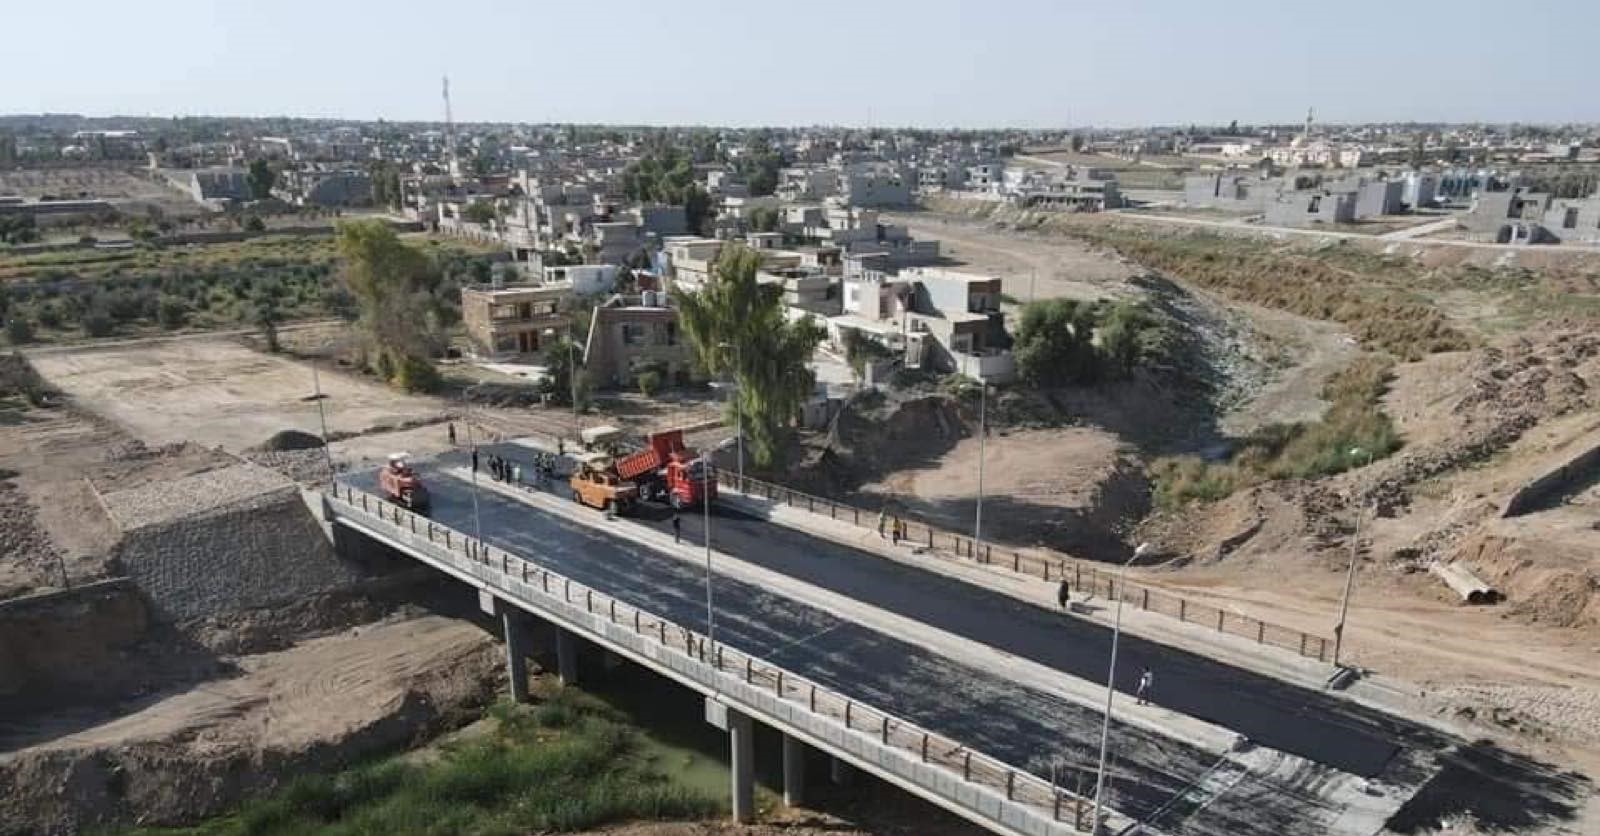 القضاء يحسم ملف "جسر الفلاح" في الموصل بتعويض المتضررين